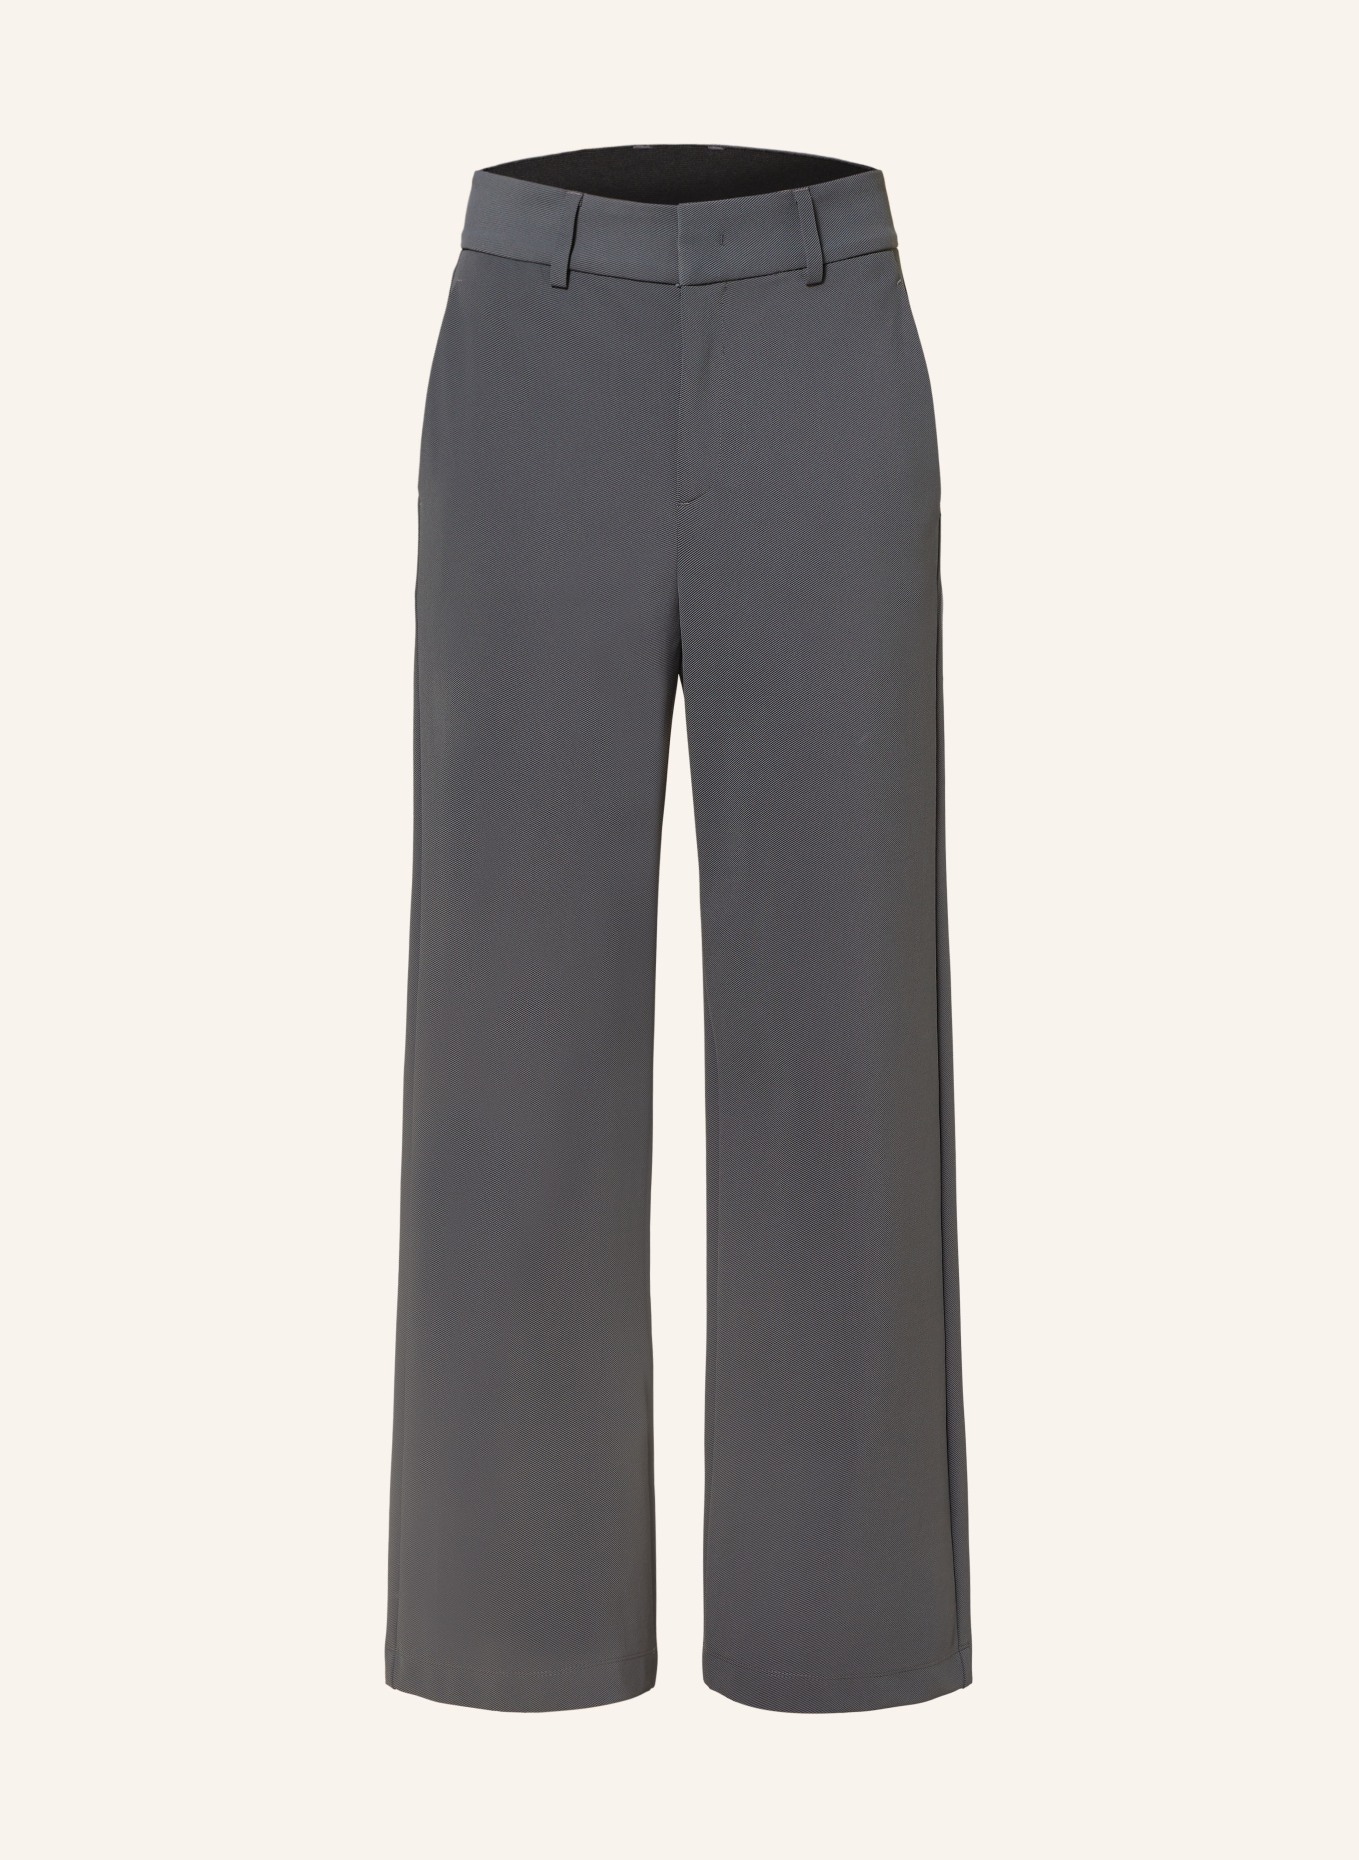 VANILIA Wide leg trousers, Color: DARK GRAY (Image 1)